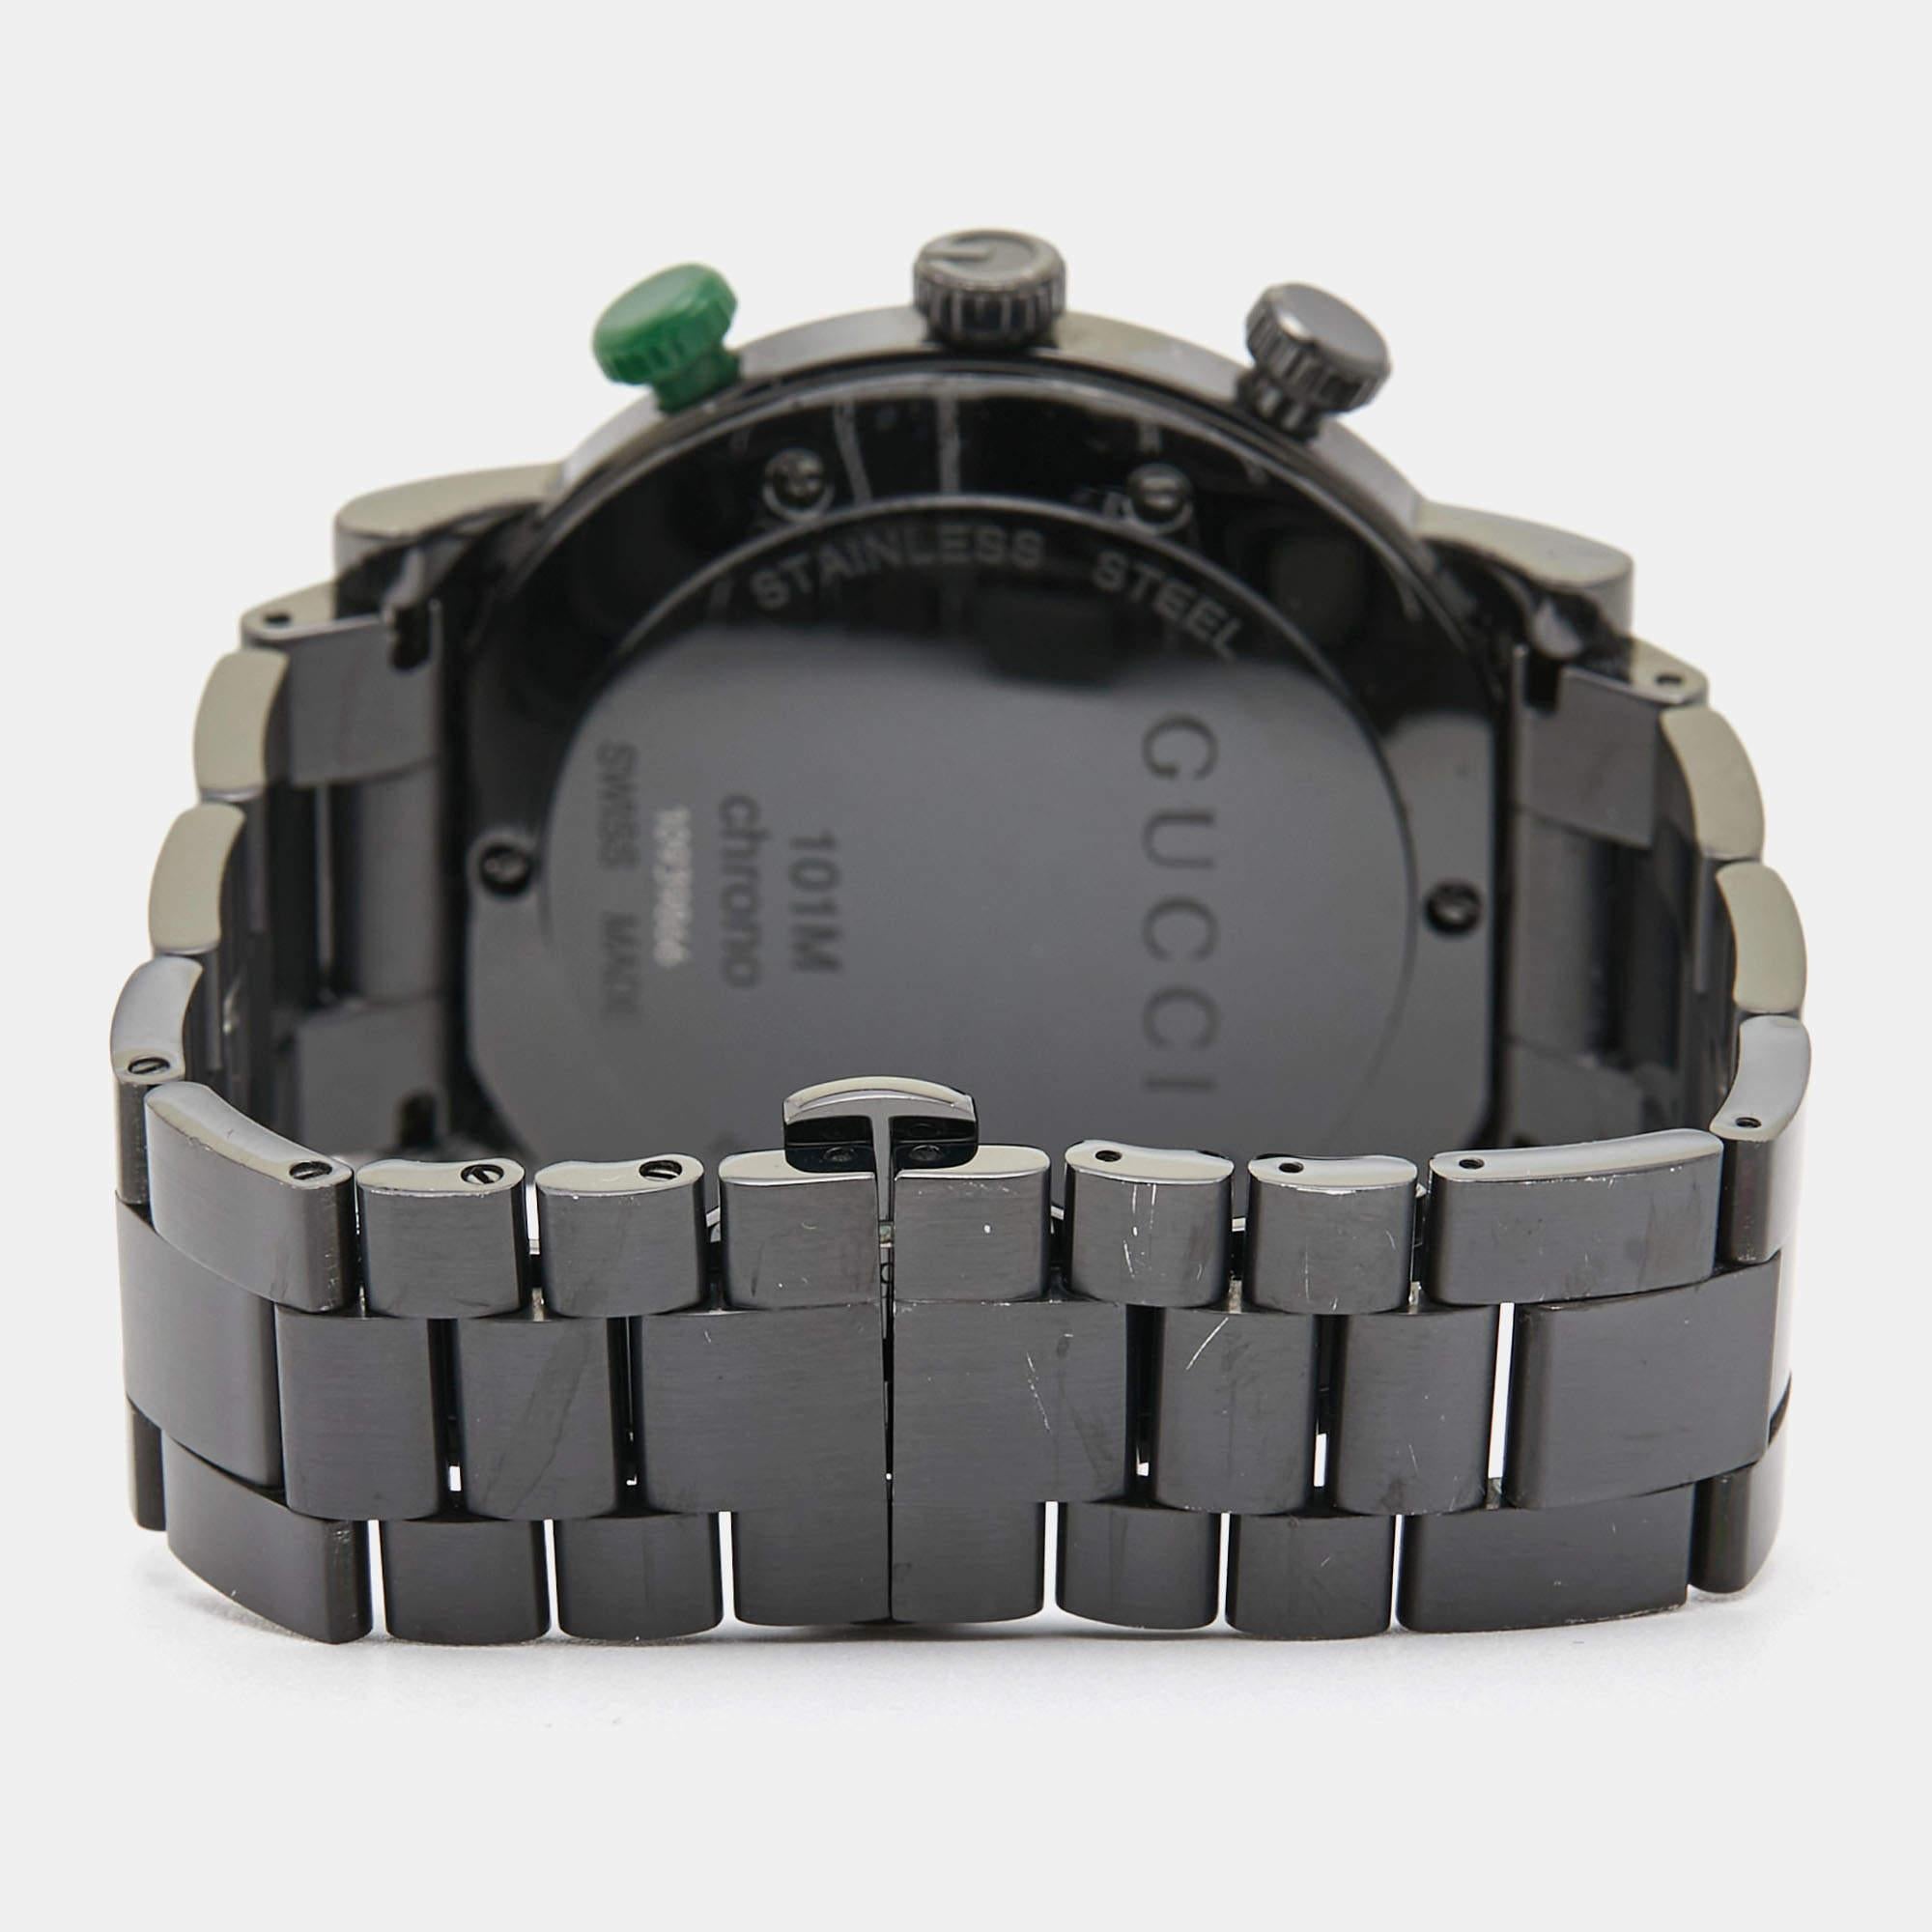 La montre-bracelet pour homme Gucci G-Chrono YA101331 incarne le luxe et la sophistication. Fabriqué avec précision, son revêtement PVD noir épuré respire l'élégance, tandis que sa construction en acier inoxydable lui confère une grande longévité.